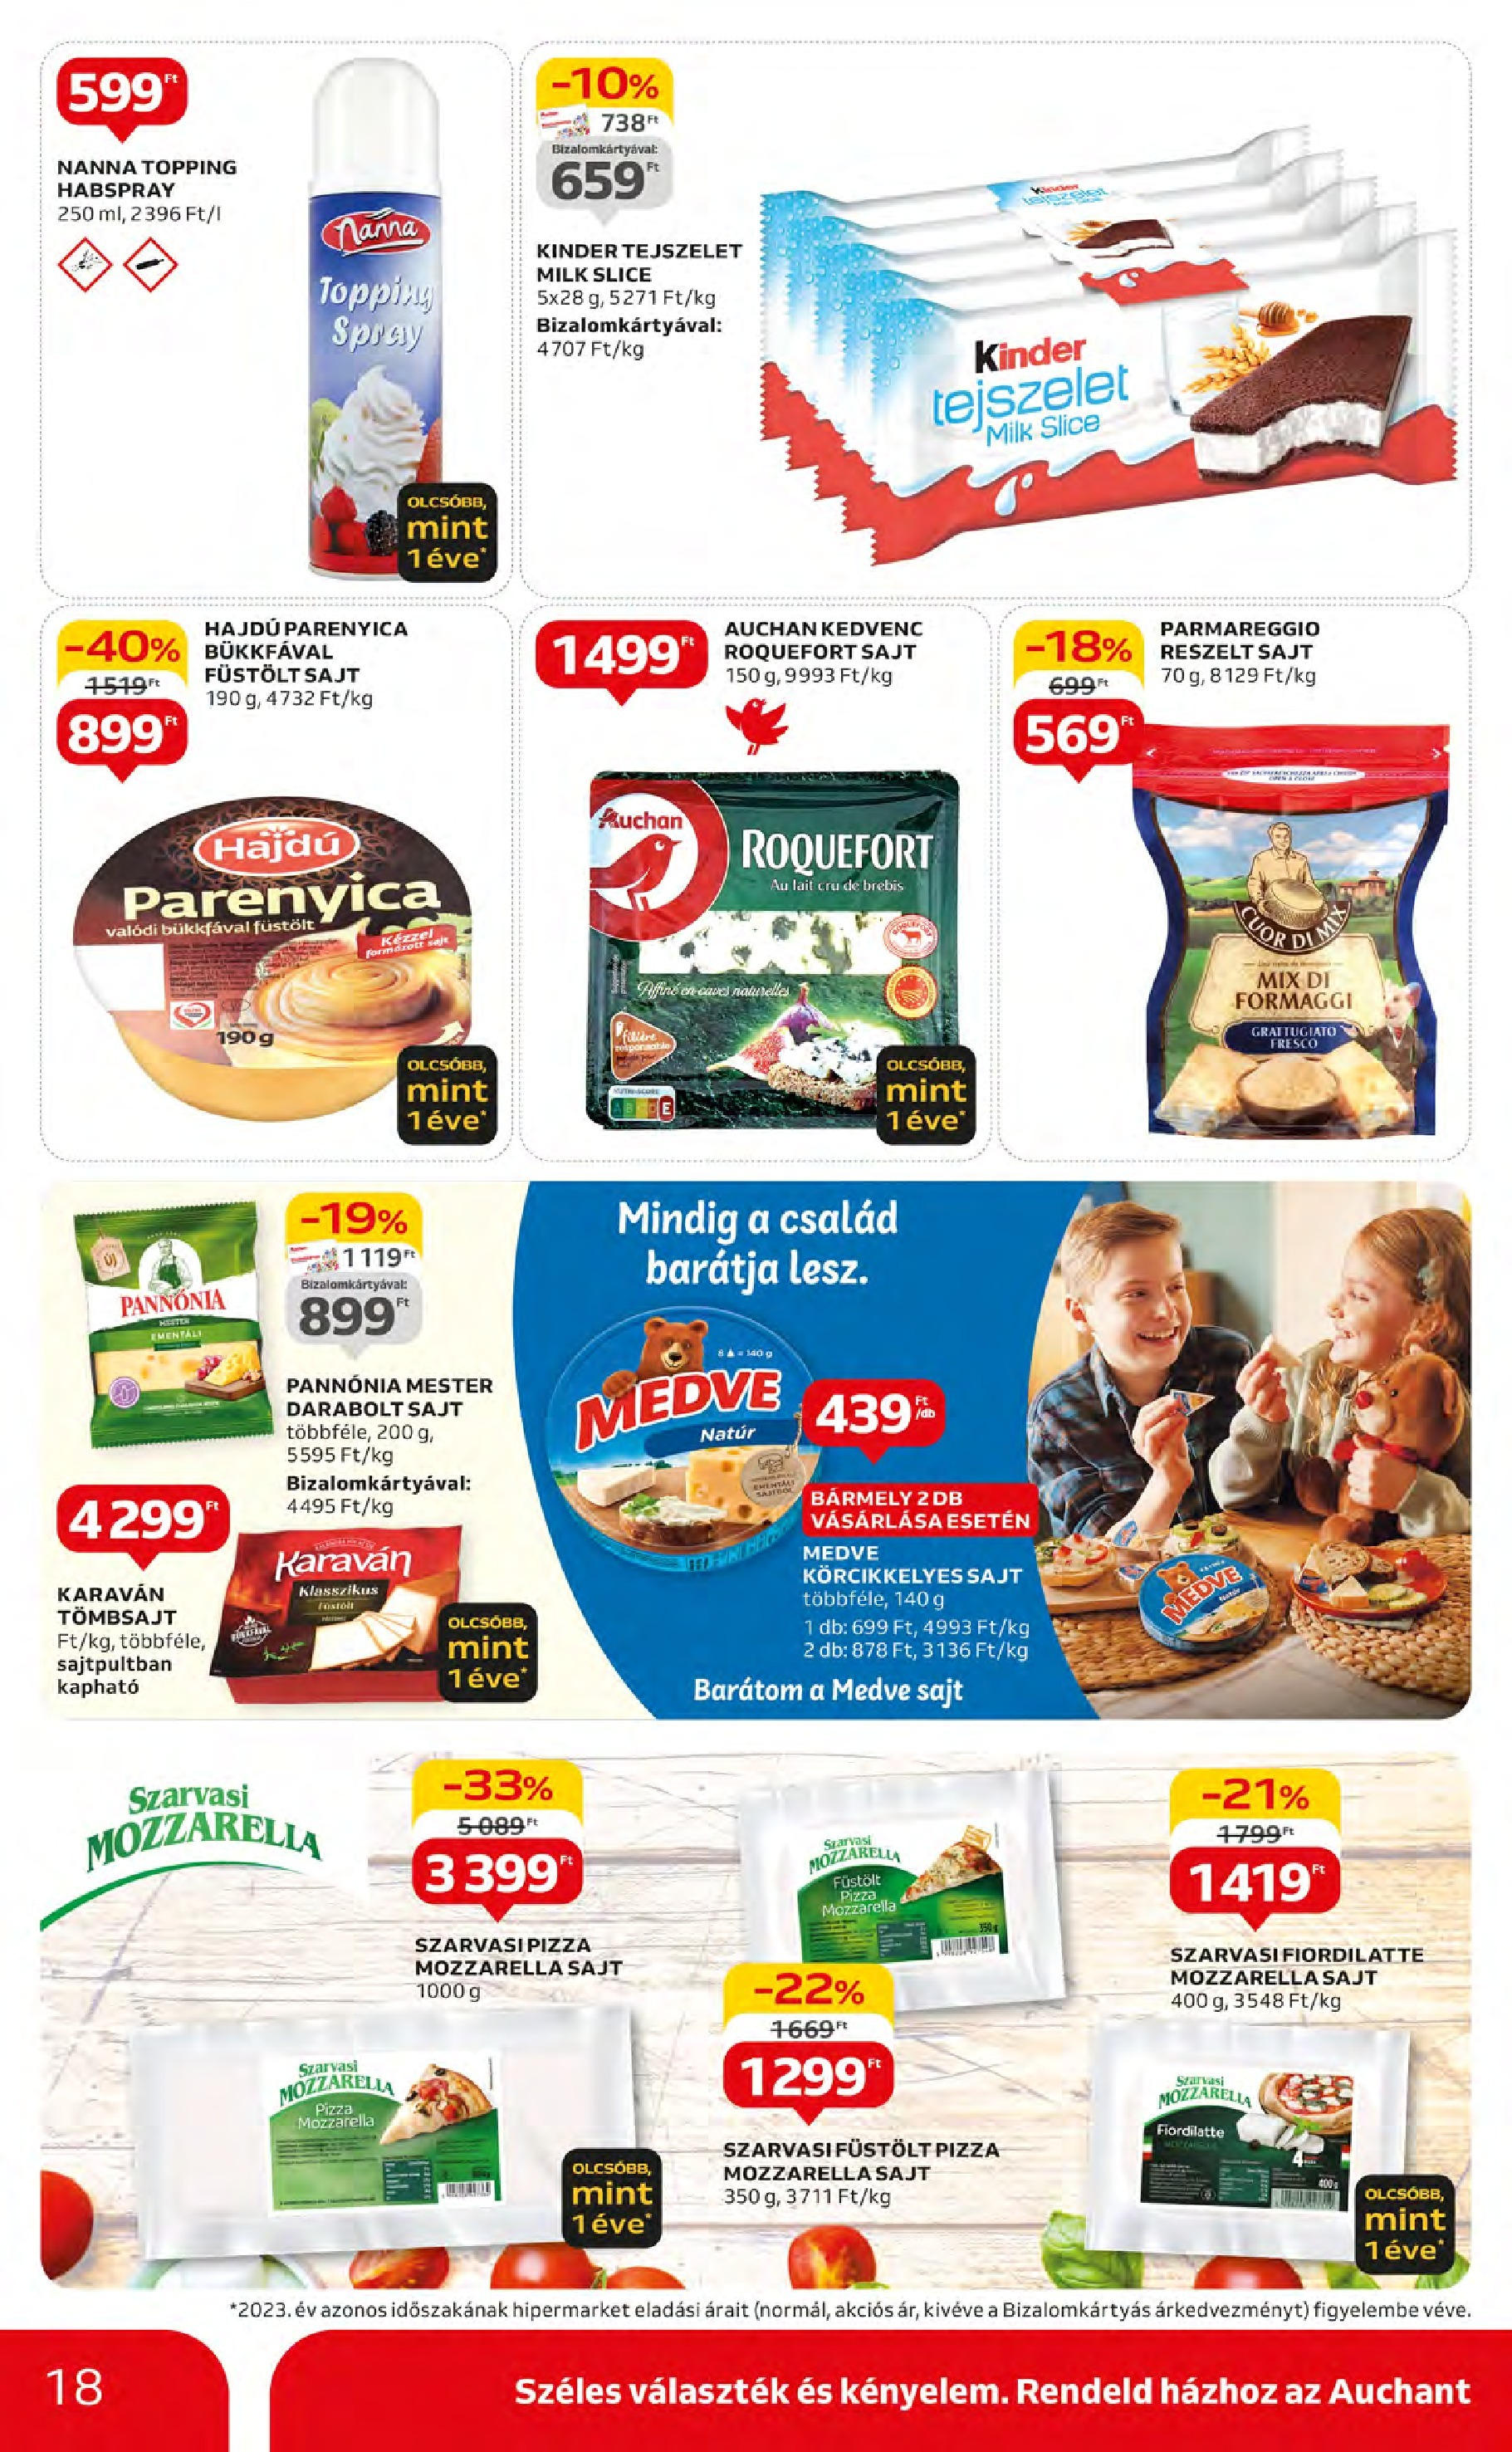 Auchan  Akciós újság - 2024.05.09. -tól/töl > akció, szórólap 🛍️ | Oldal: 18 | Termékek: Mozzarella, Tejszelet, Sajt, Pizza